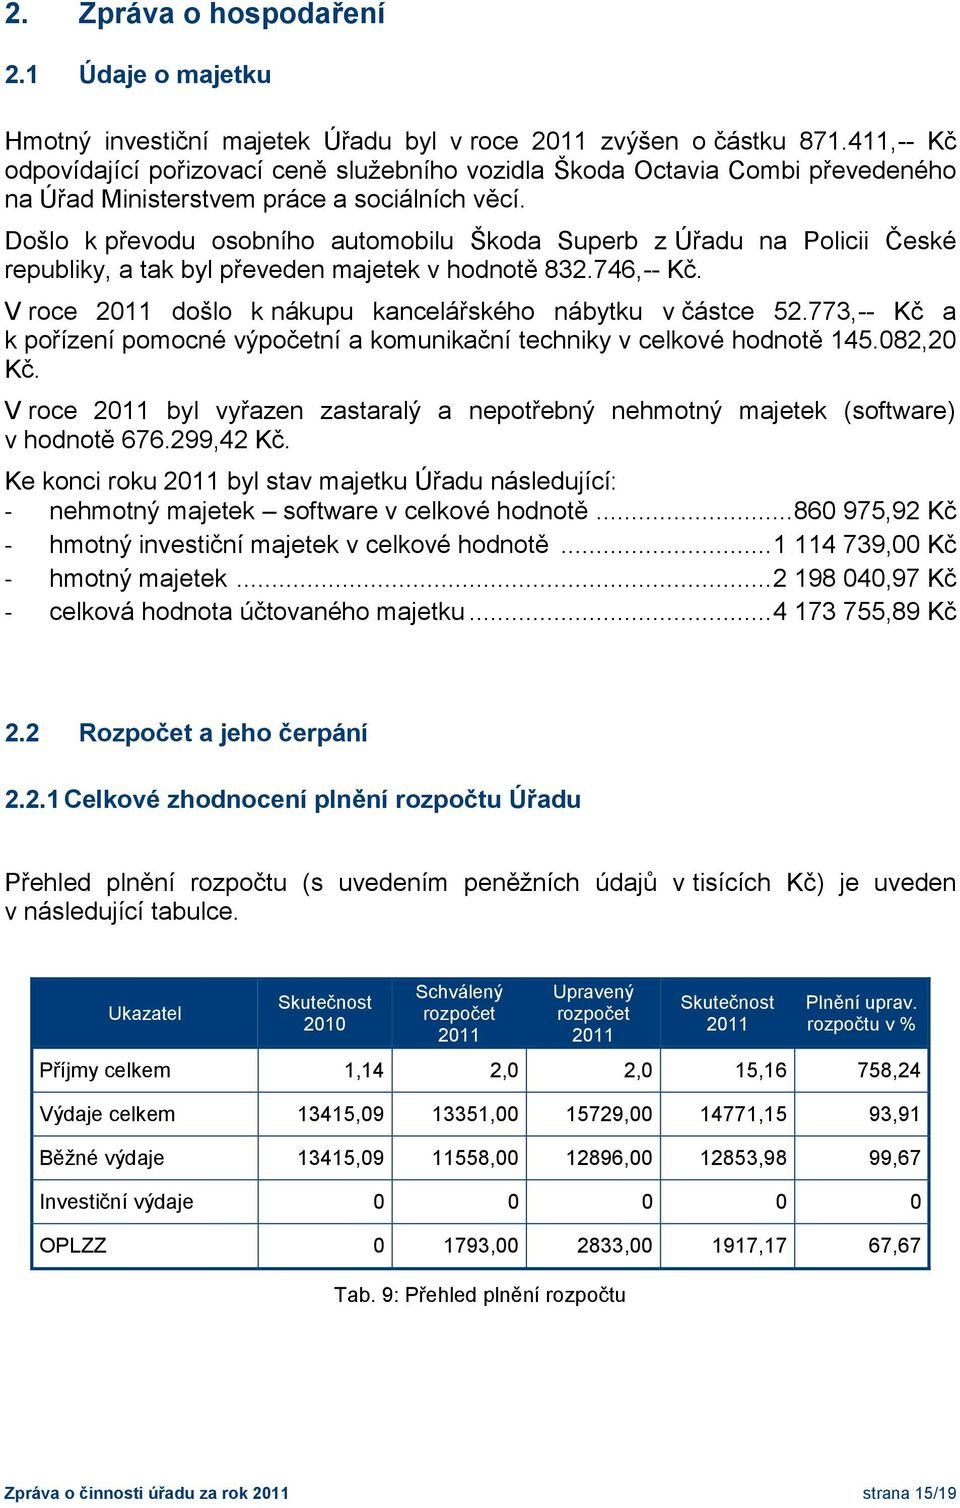 Došlo k převodu osobního automobilu Škoda Superb z Úřadu na Policii České republiky, a tak byl převeden majetek v hodnotě 832.746,-- Kč. V roce 2011 došlo k nákupu kancelářského nábytku v částce 52.